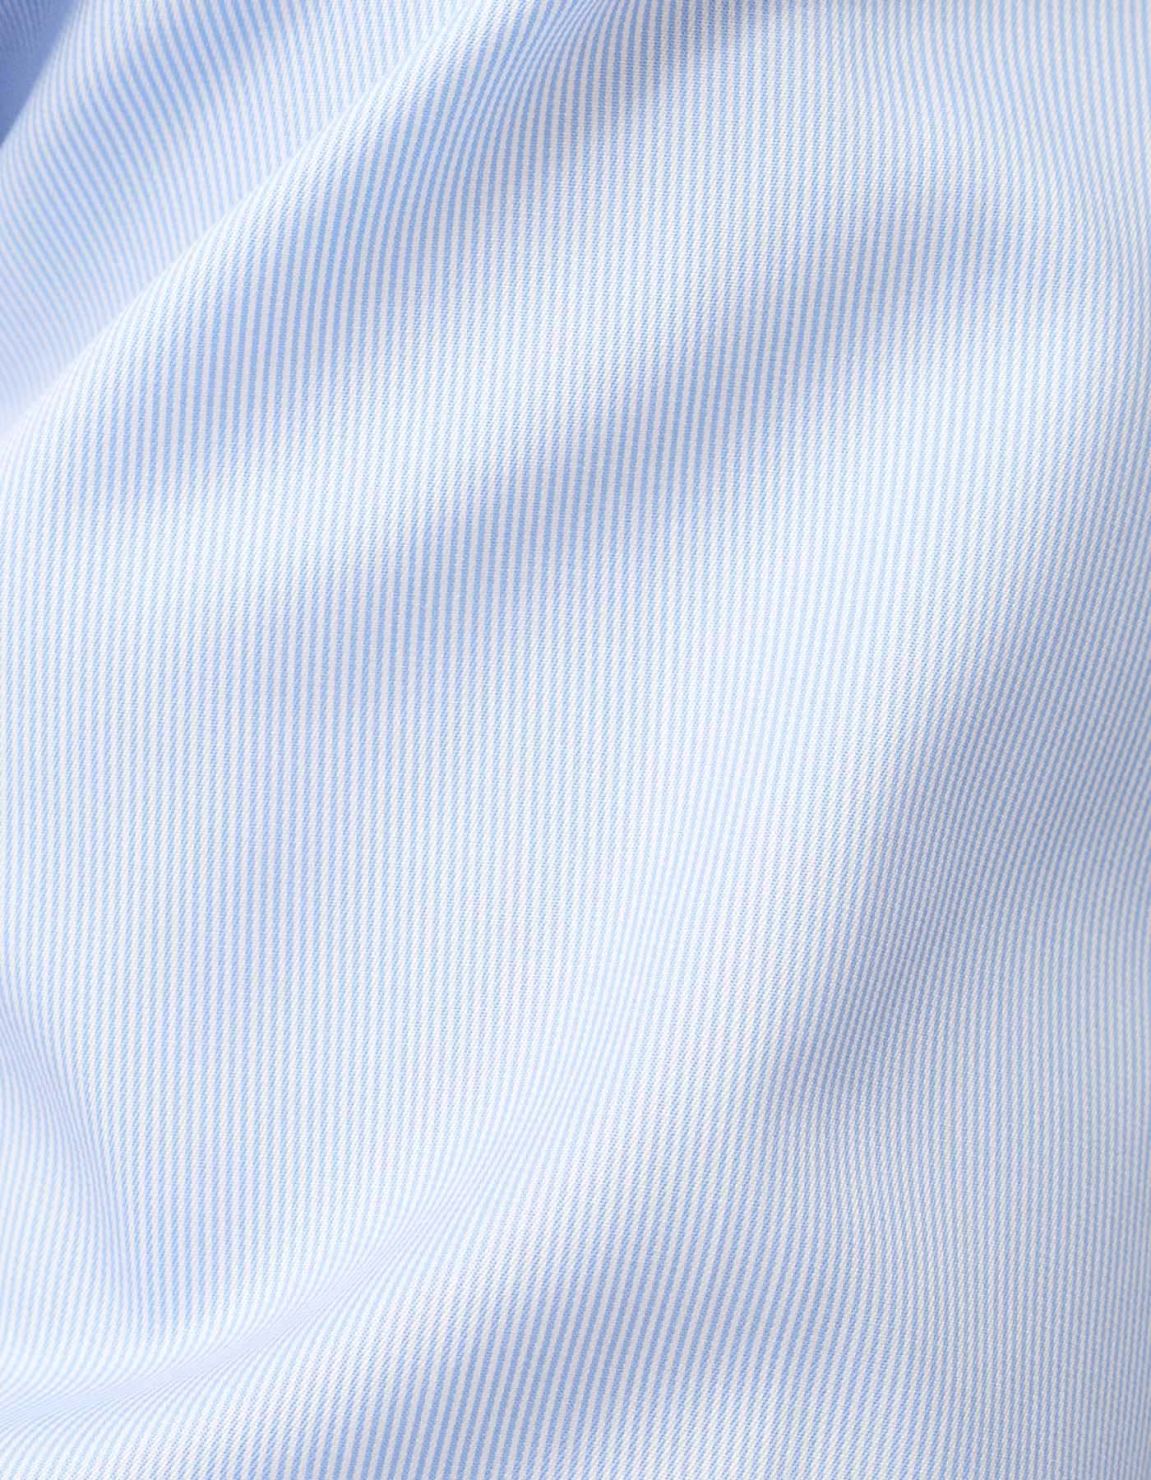 Camicia Collo francese Tinta Unita Twill Celeste chiaro Tailor Custom Fit 2